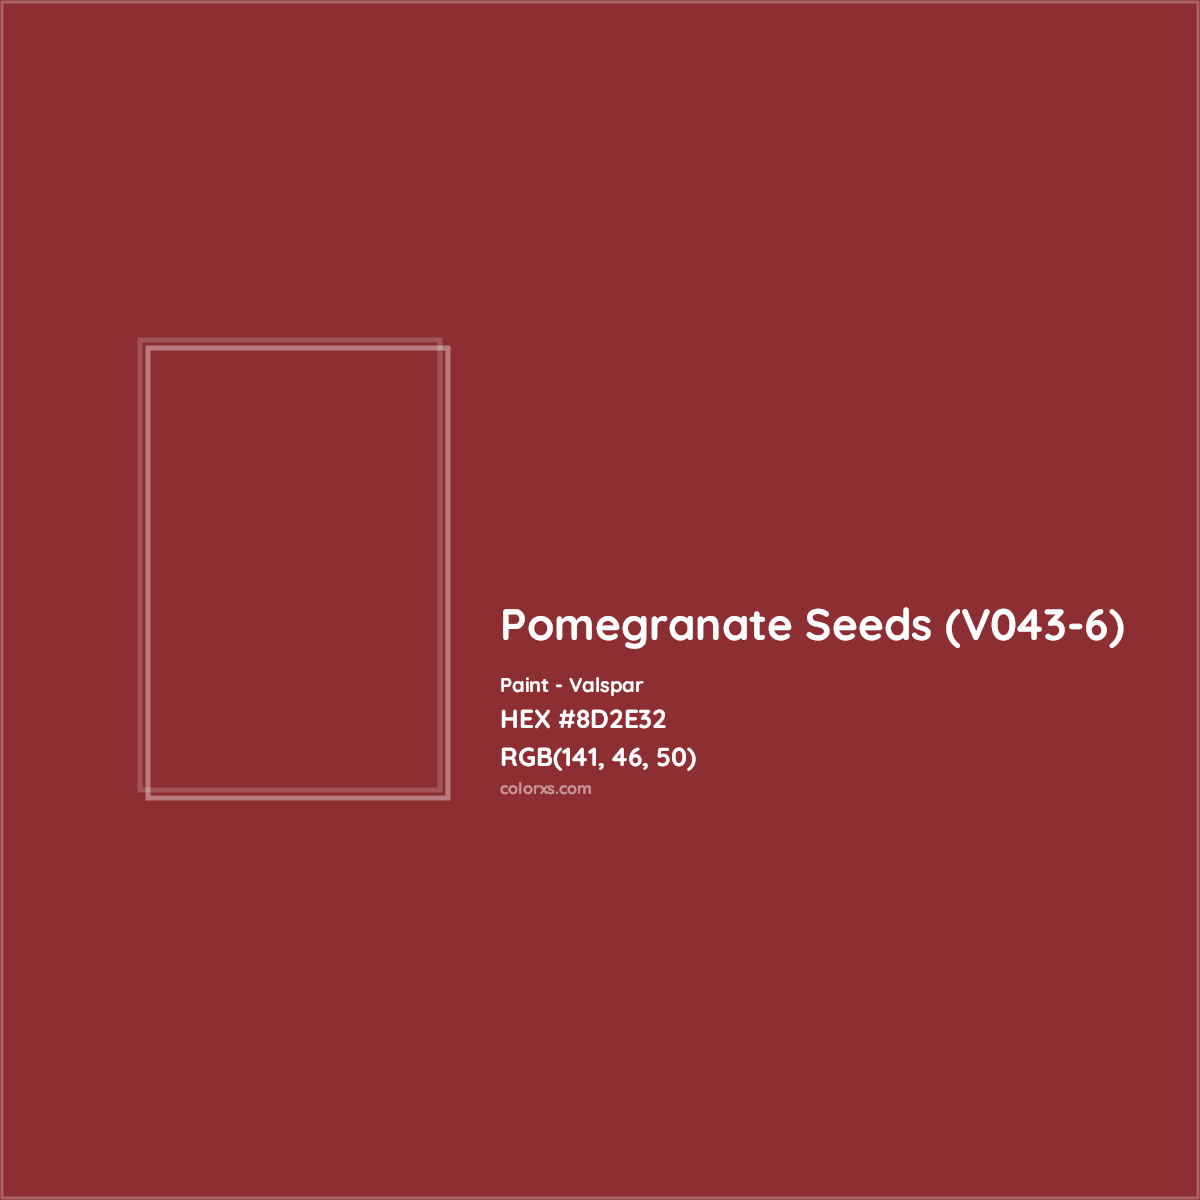 HEX #8D2E32 Pomegranate Seeds (V043-6) Paint Valspar - Color Code